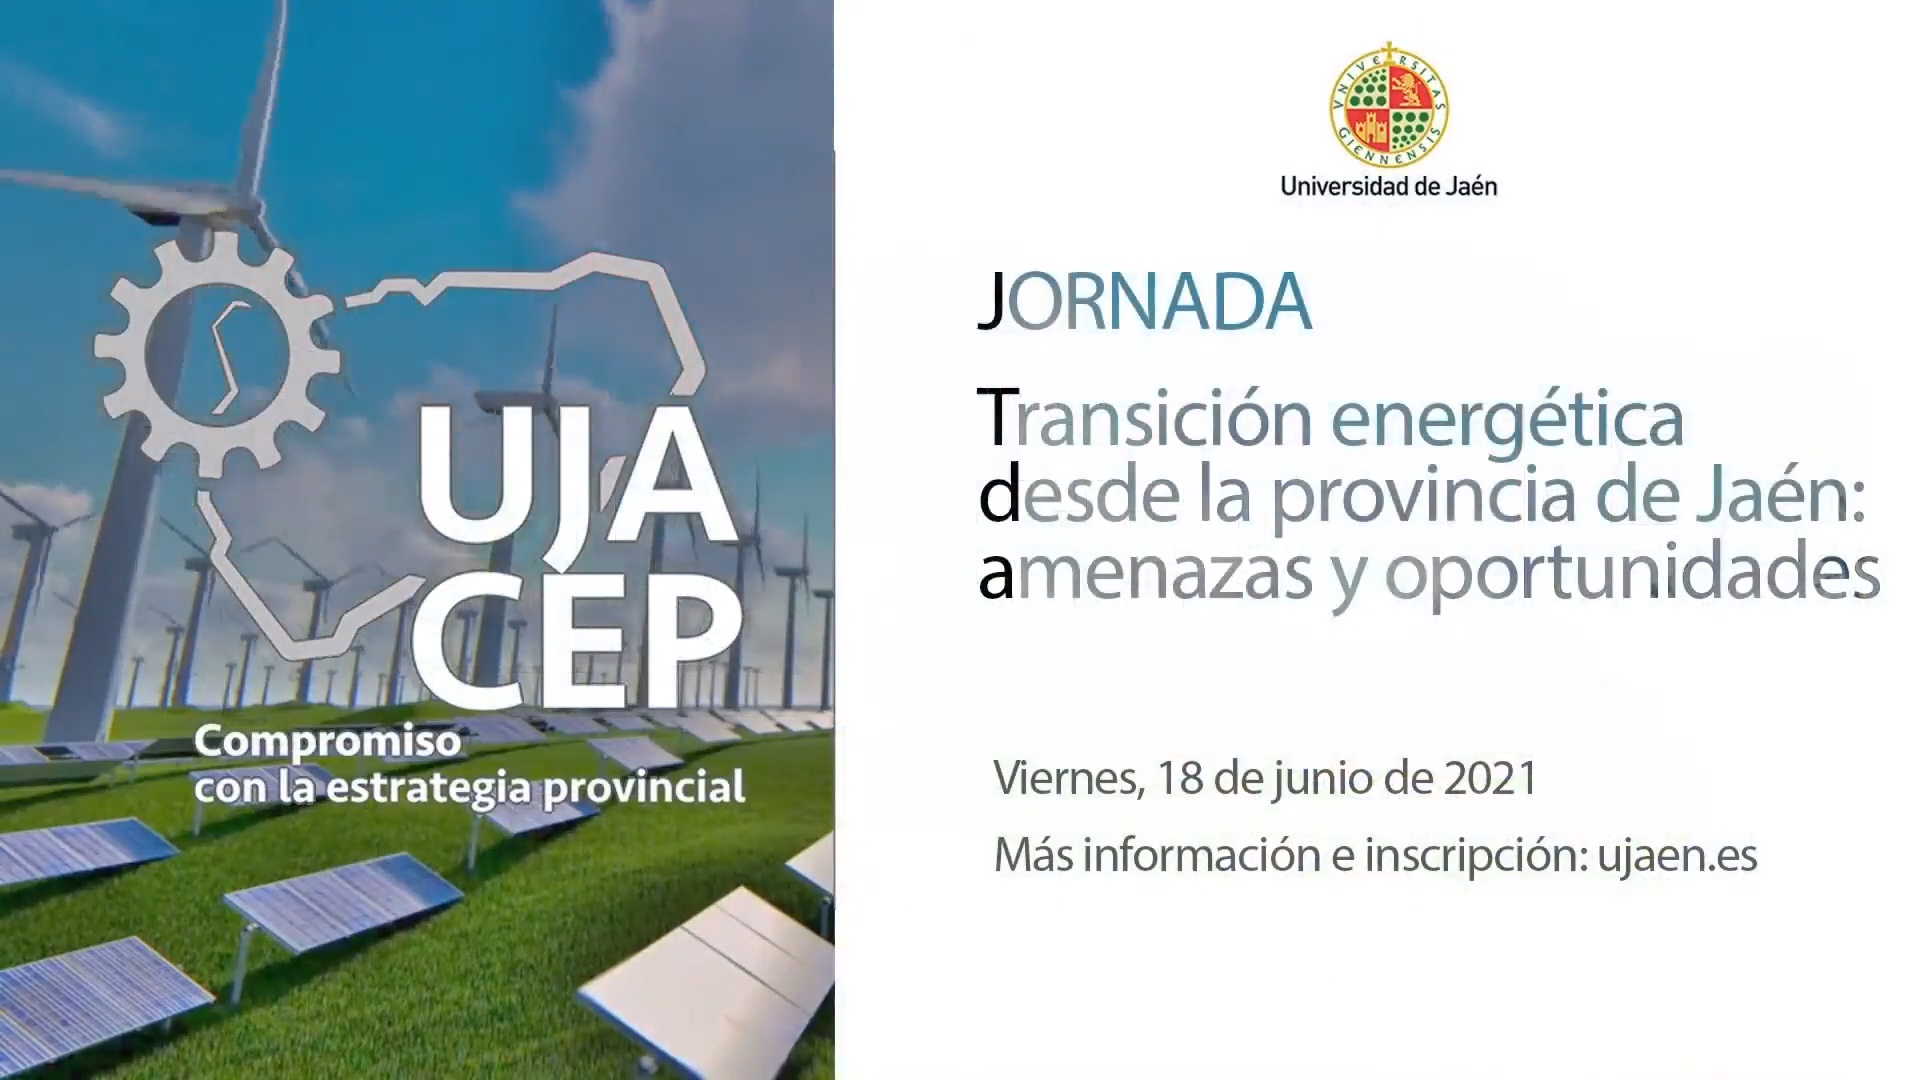 Jornada "Transición energética desde la provincia de Jaén: amenazas y oportunidades"